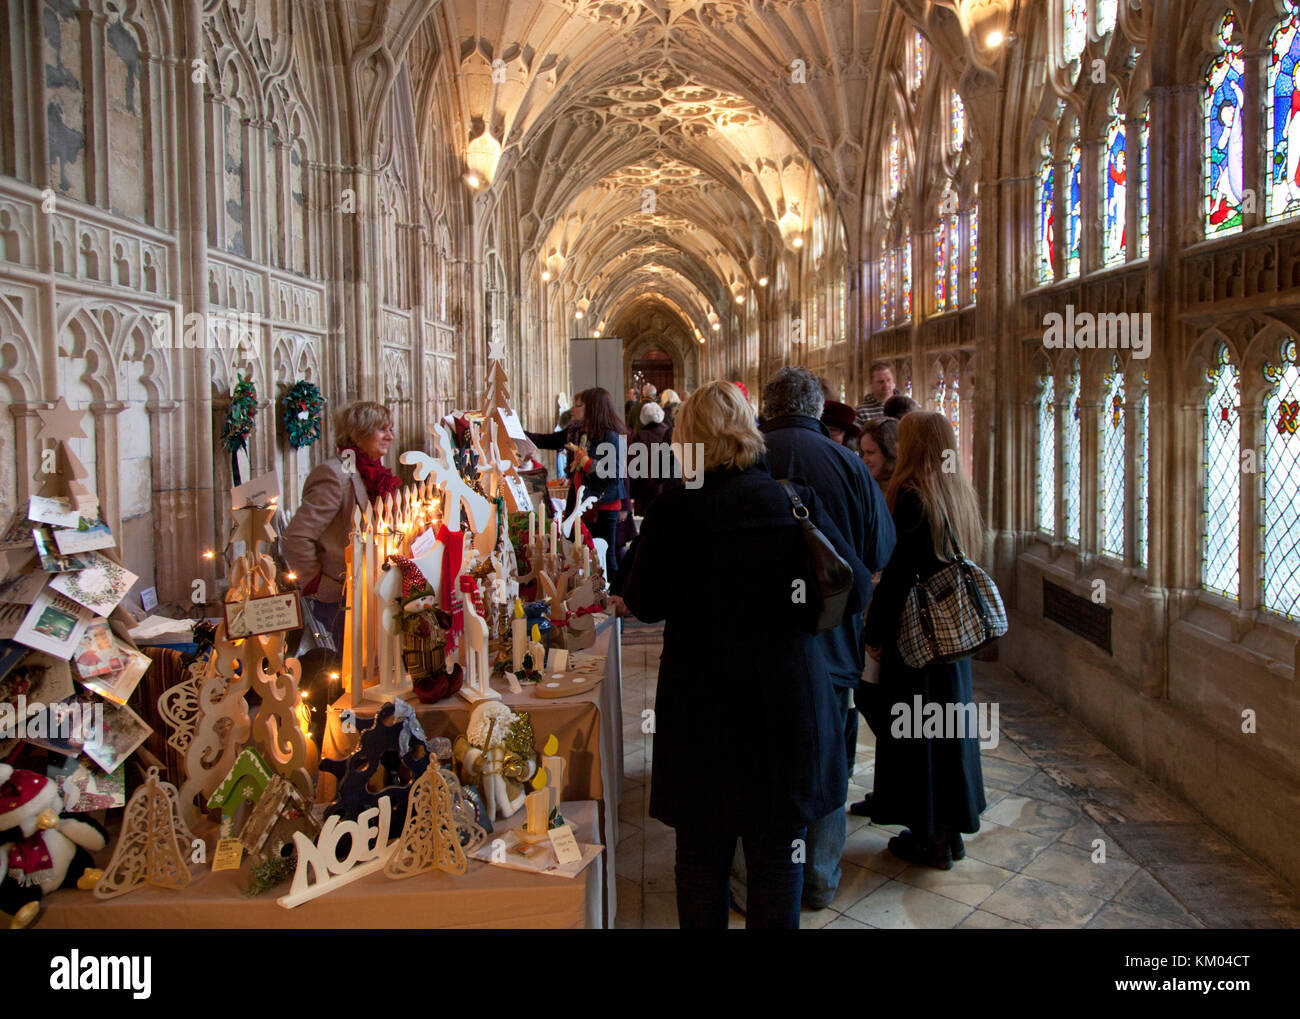 Christmas Shopper sfoglia festosa bancarelle del mercato nell'ornato e storica nel chiostro della cattedrale di Gloucester nel Regno Unito Foto Stock